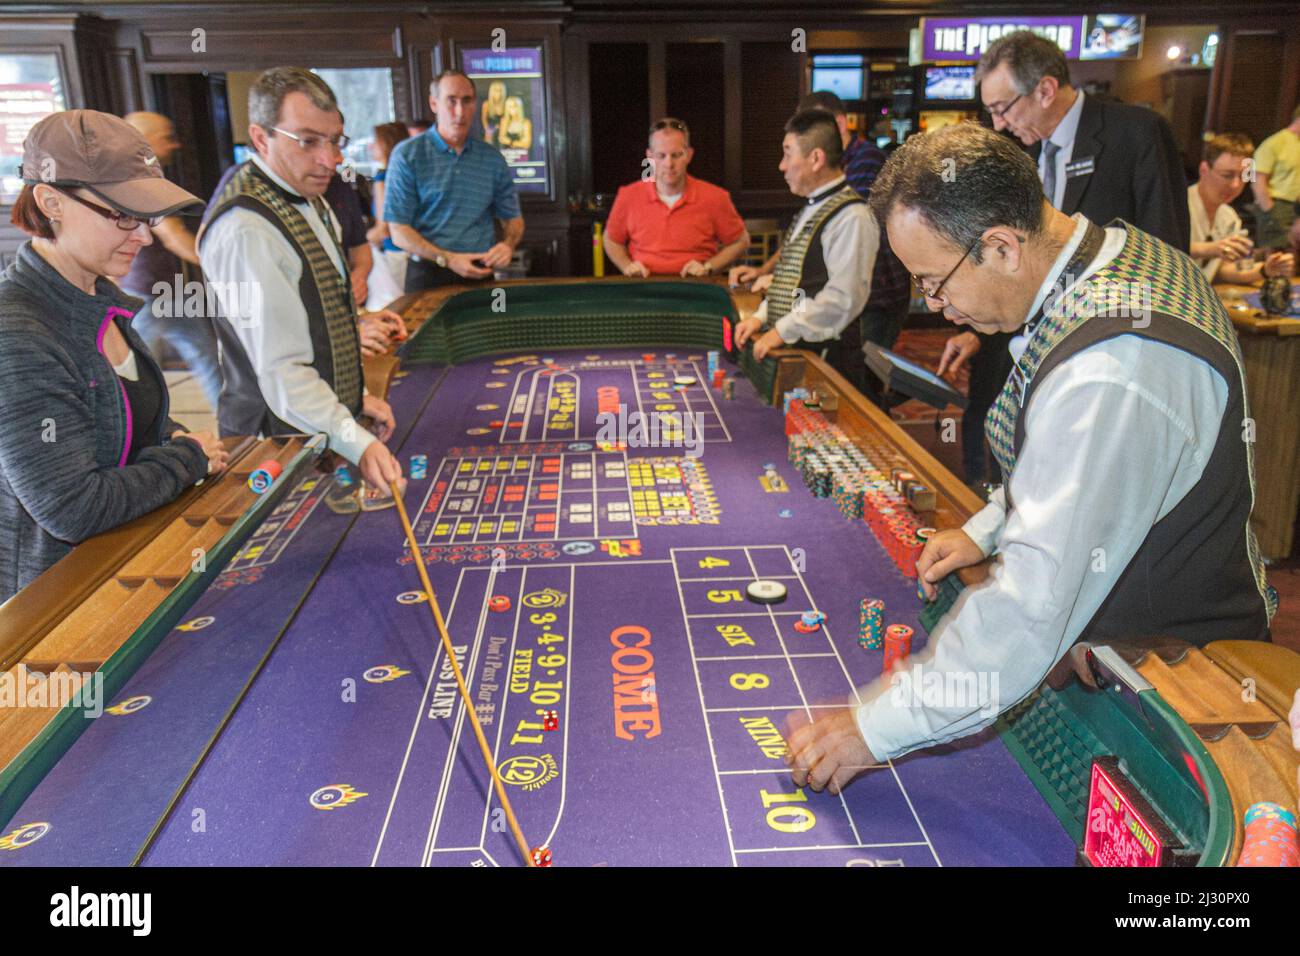 Las Vegas Nevada,Strip,South Boulevard Harrah's Hotel casino,giochi d'azzardo,craps table,dipendenti lavoratori boxman base dealer stickman uomini giocatori Foto Stock